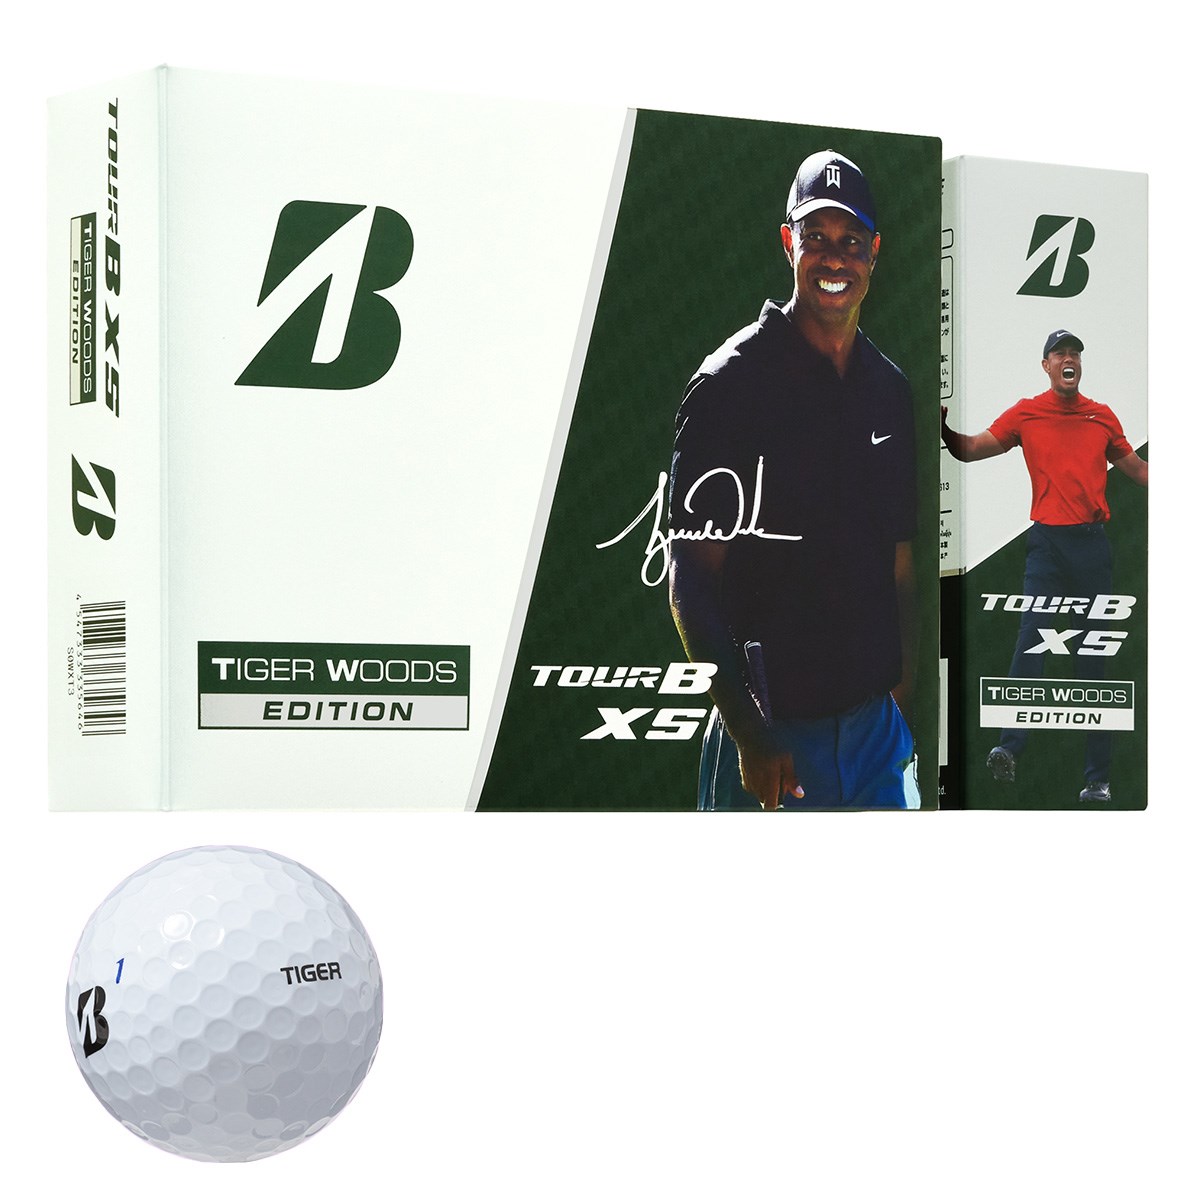 TOUR B XS Tiger Woods 2020 Edition ボール(ゴルフボール)